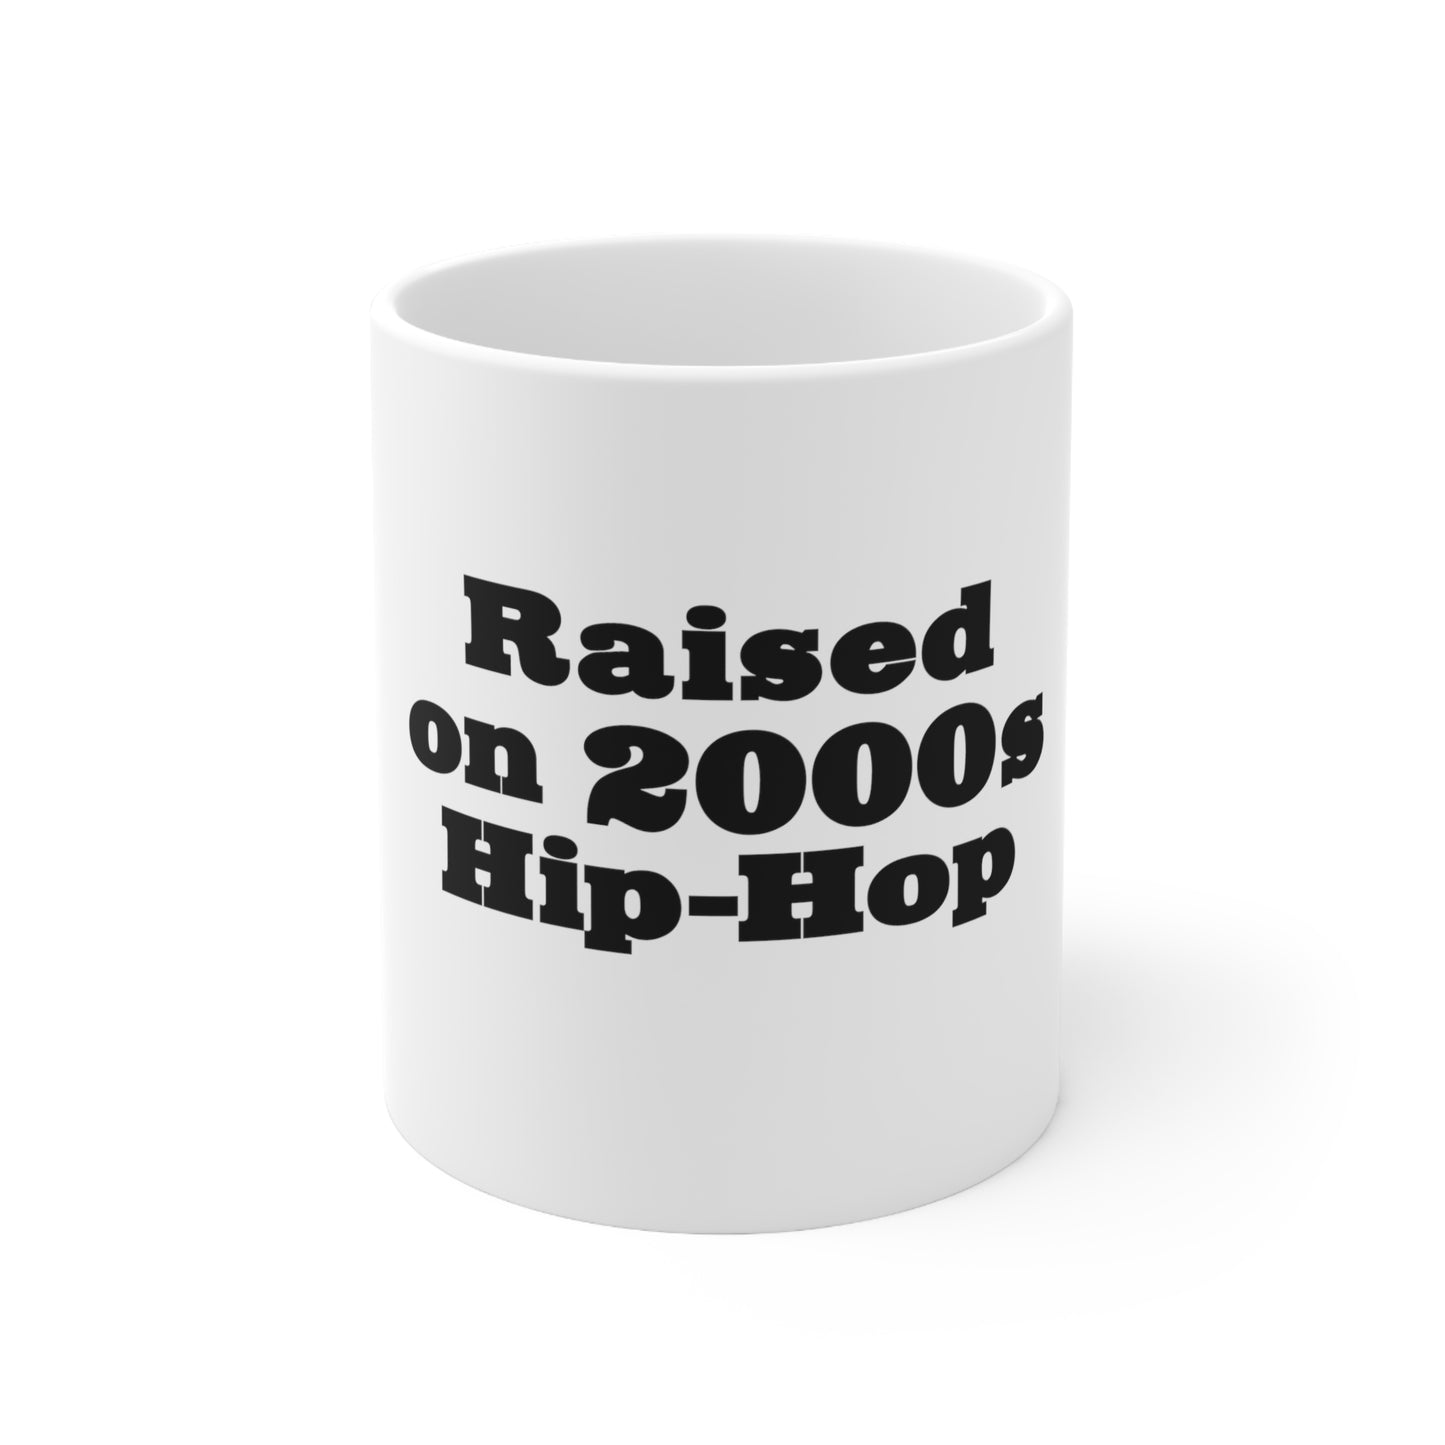 Raised on 2000s Hip-Hop 11oz Mug Great Gift for a 2000s Hip-Hop & Rap Lover